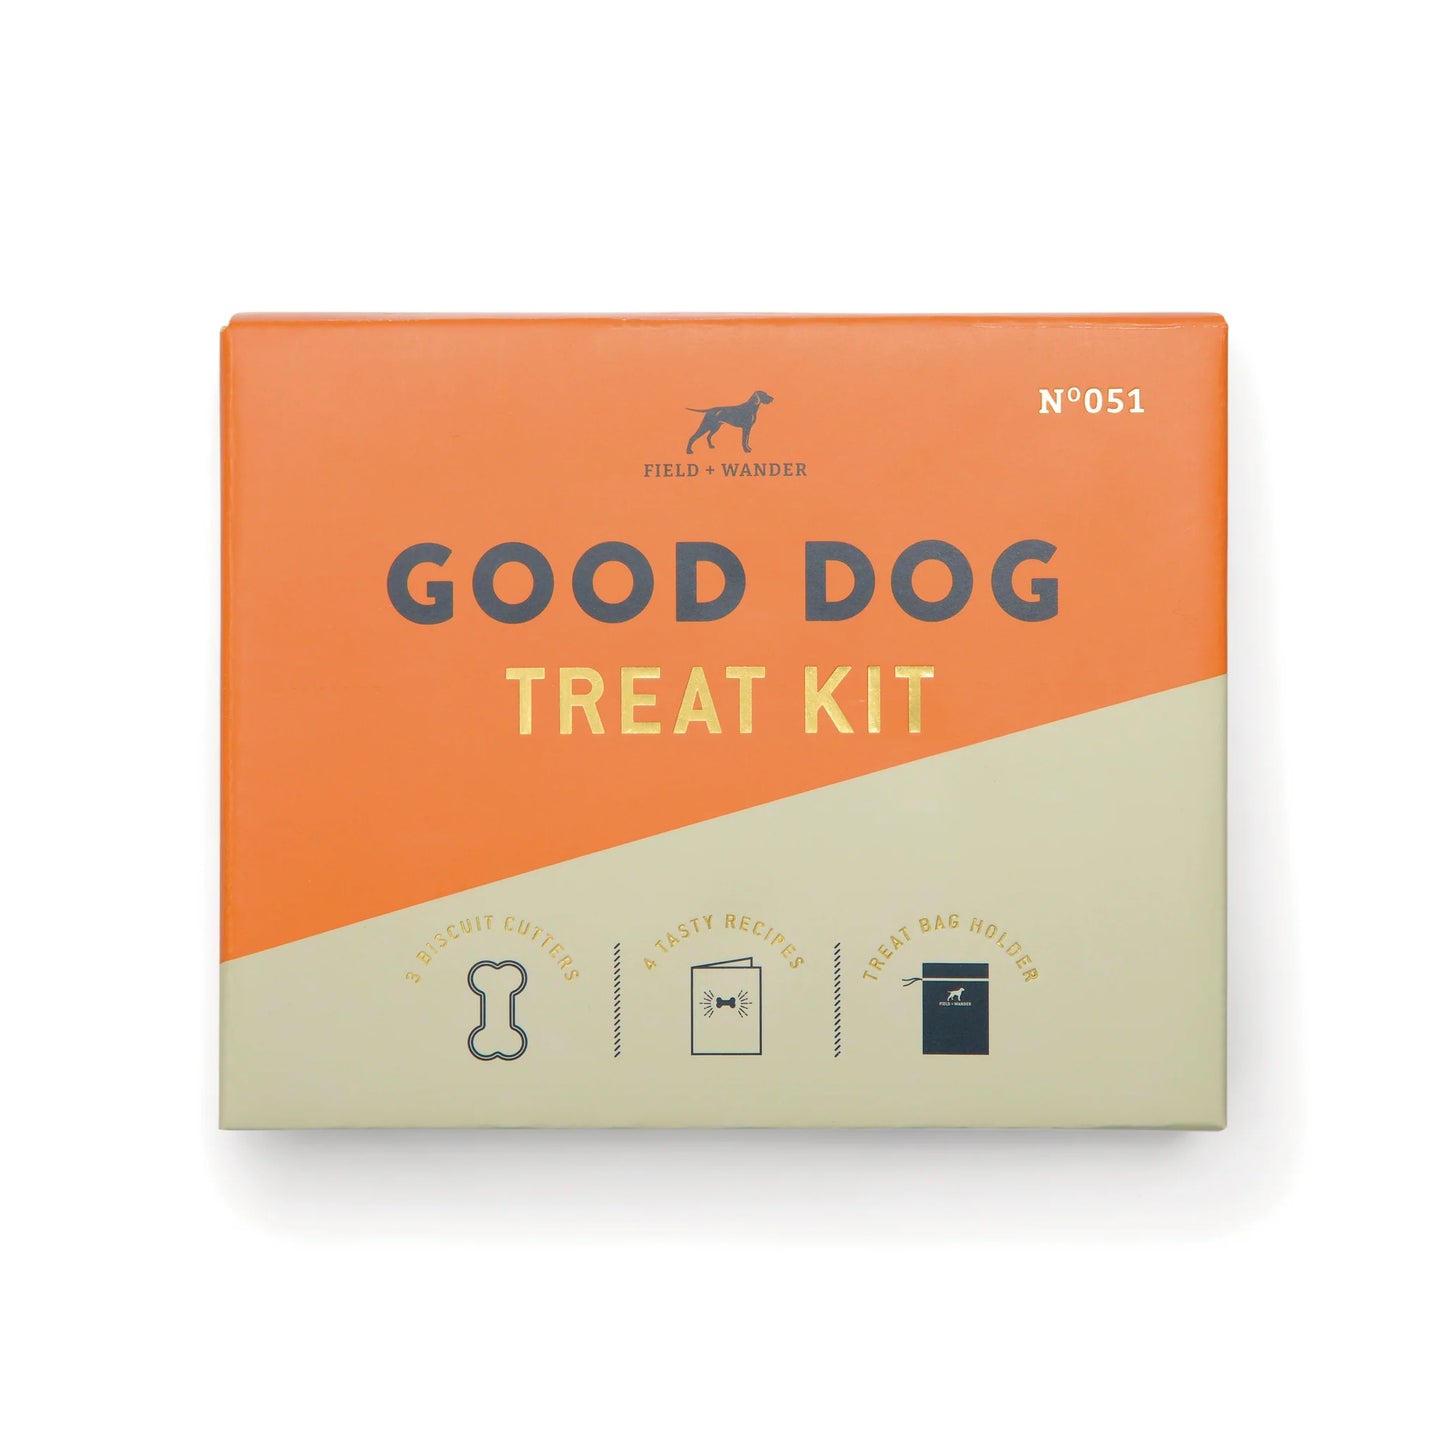 Good Dog Treat Kit